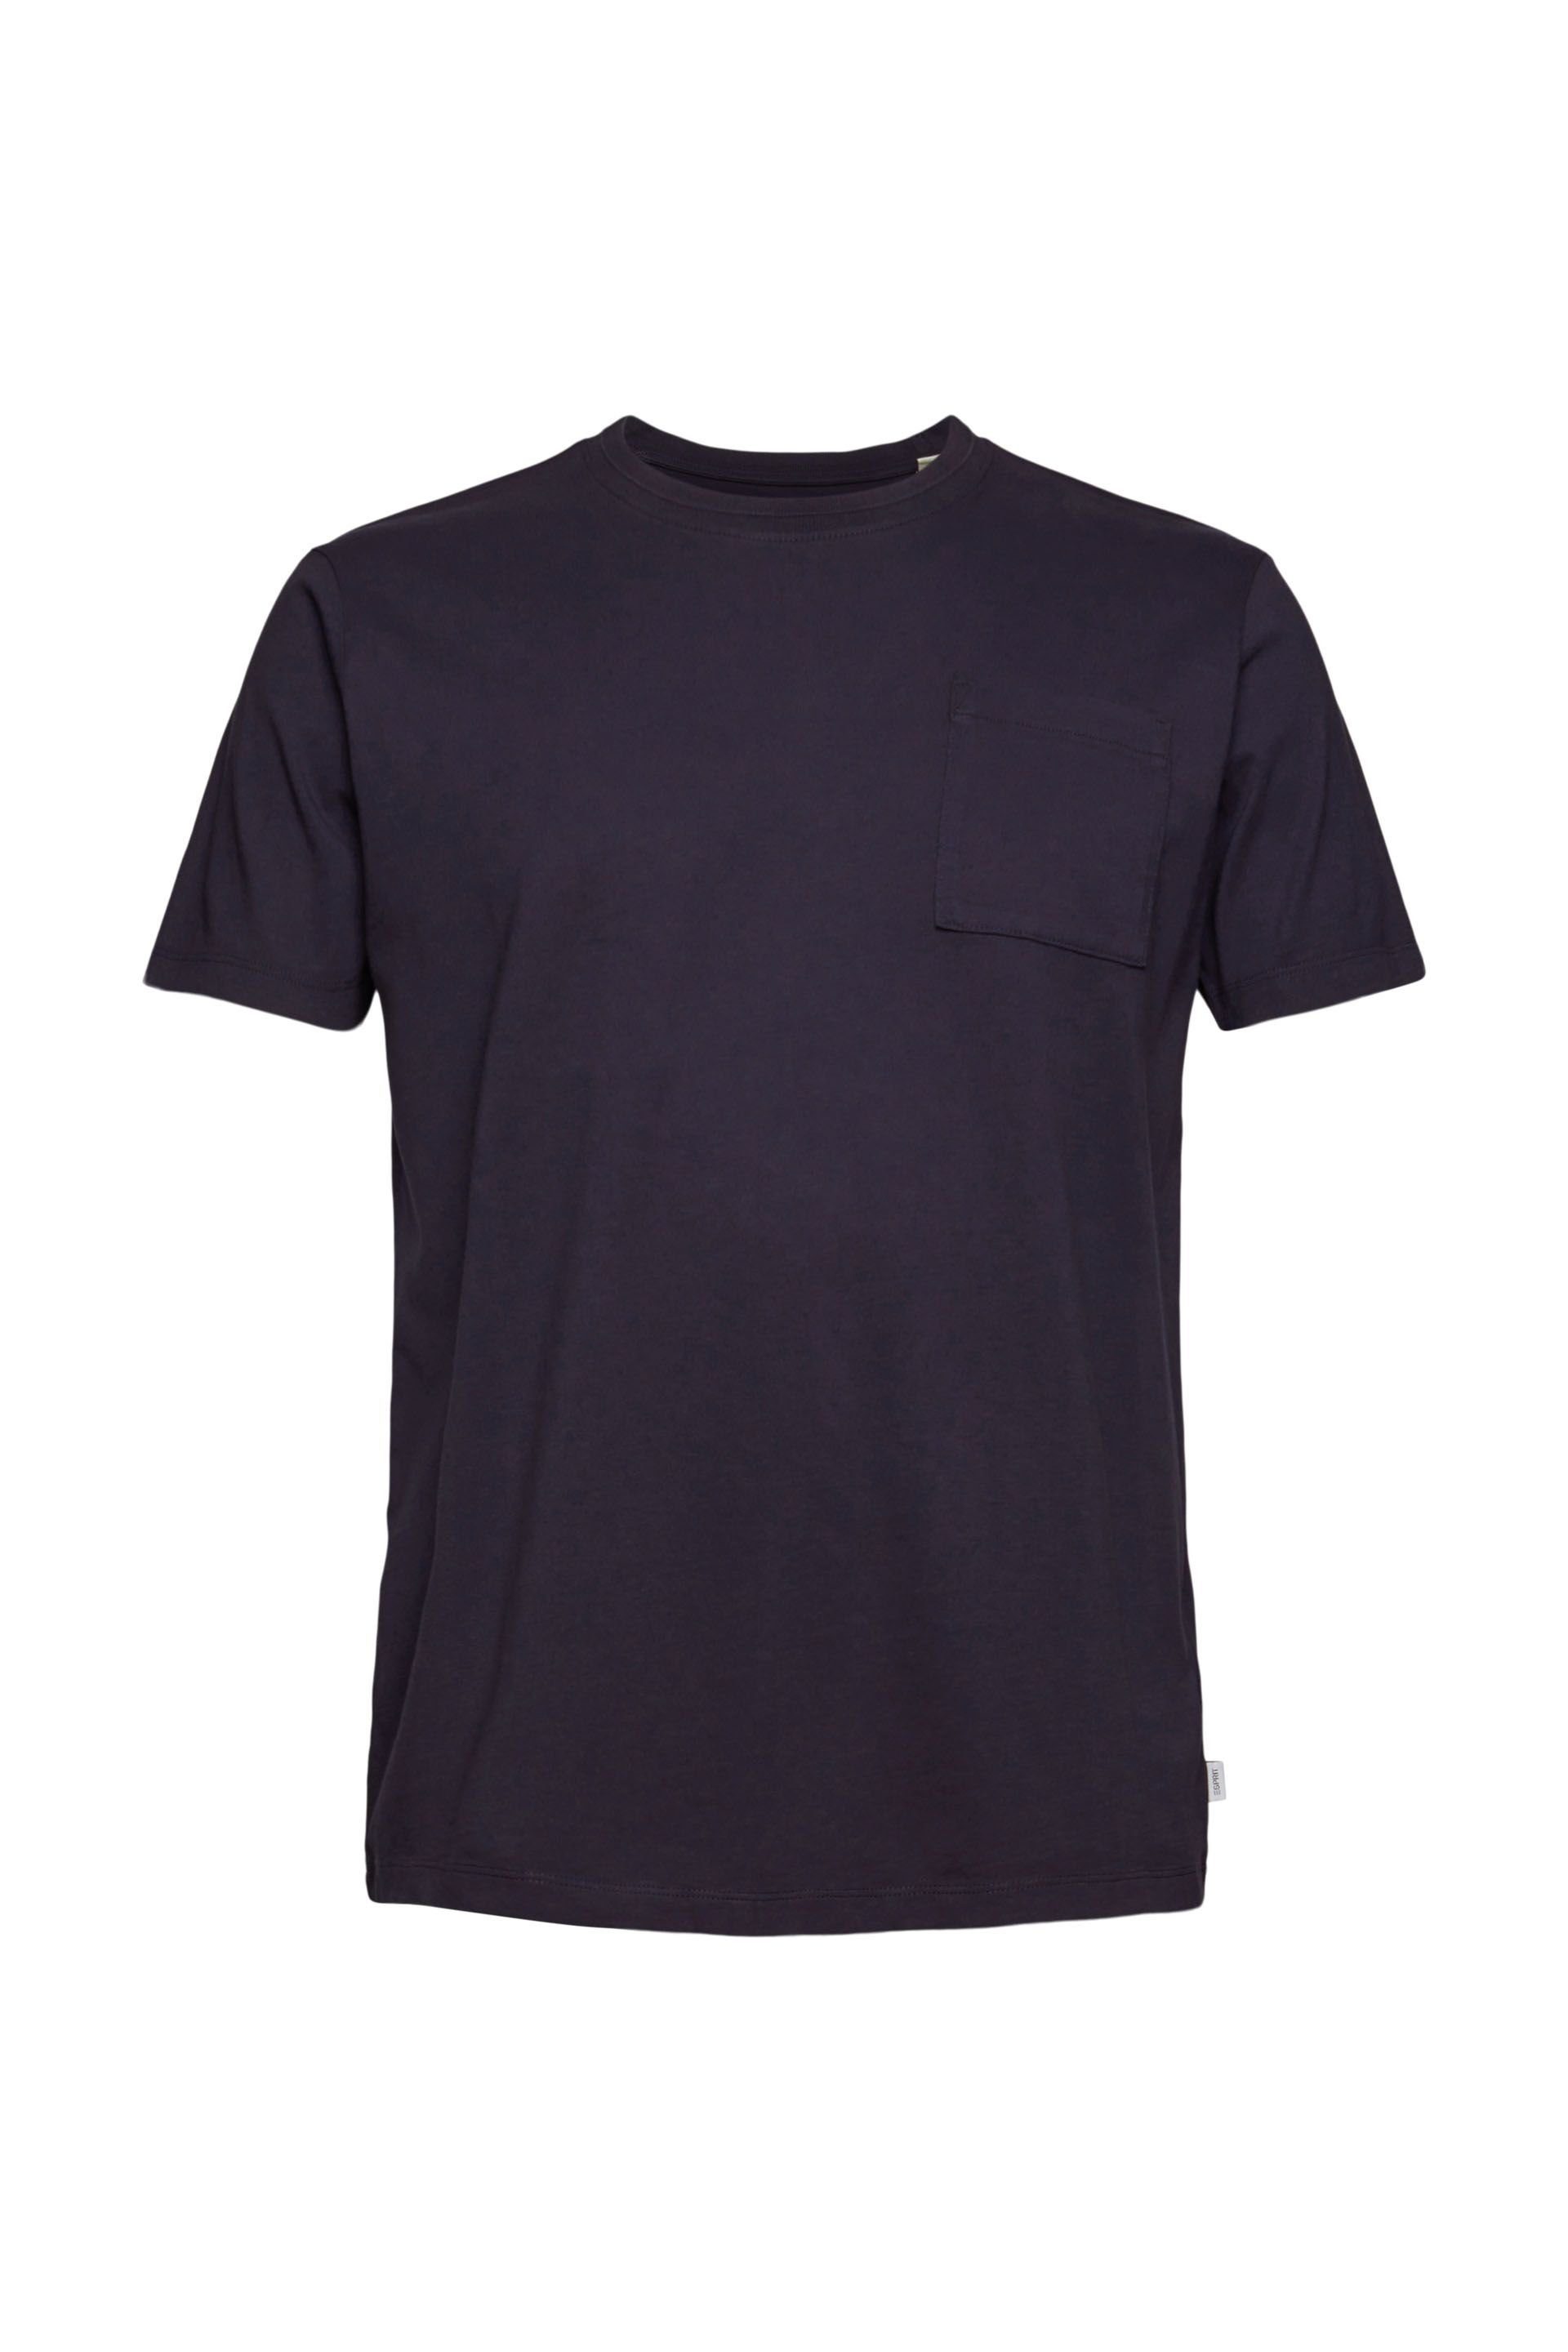 Ab in den Versandhandel! Esprit T-Shirt navy